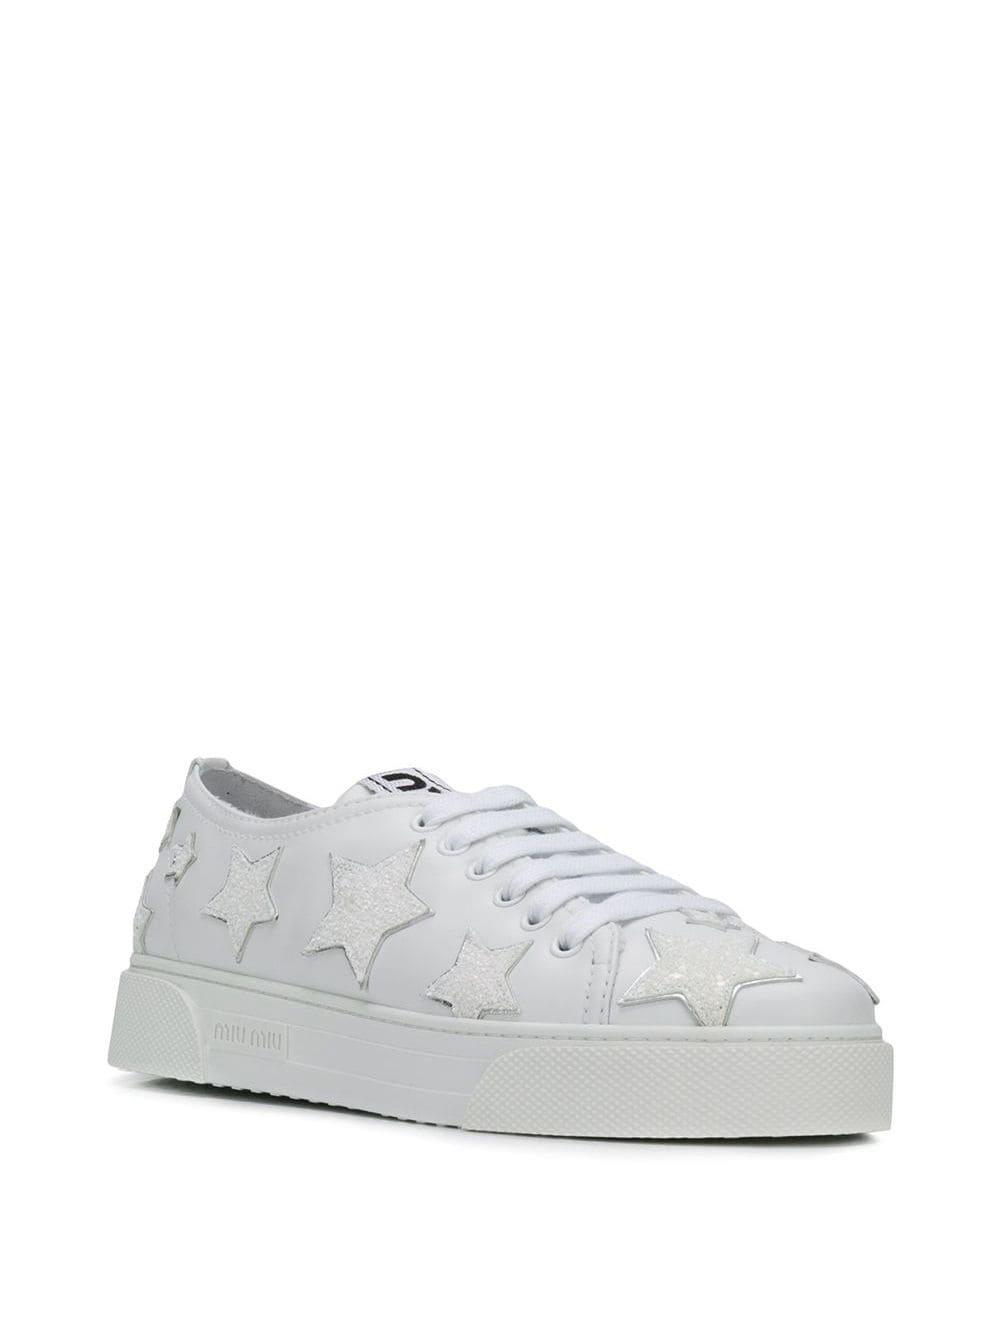 Miu Miu Glitter Stars Sneakers in White | Lyst